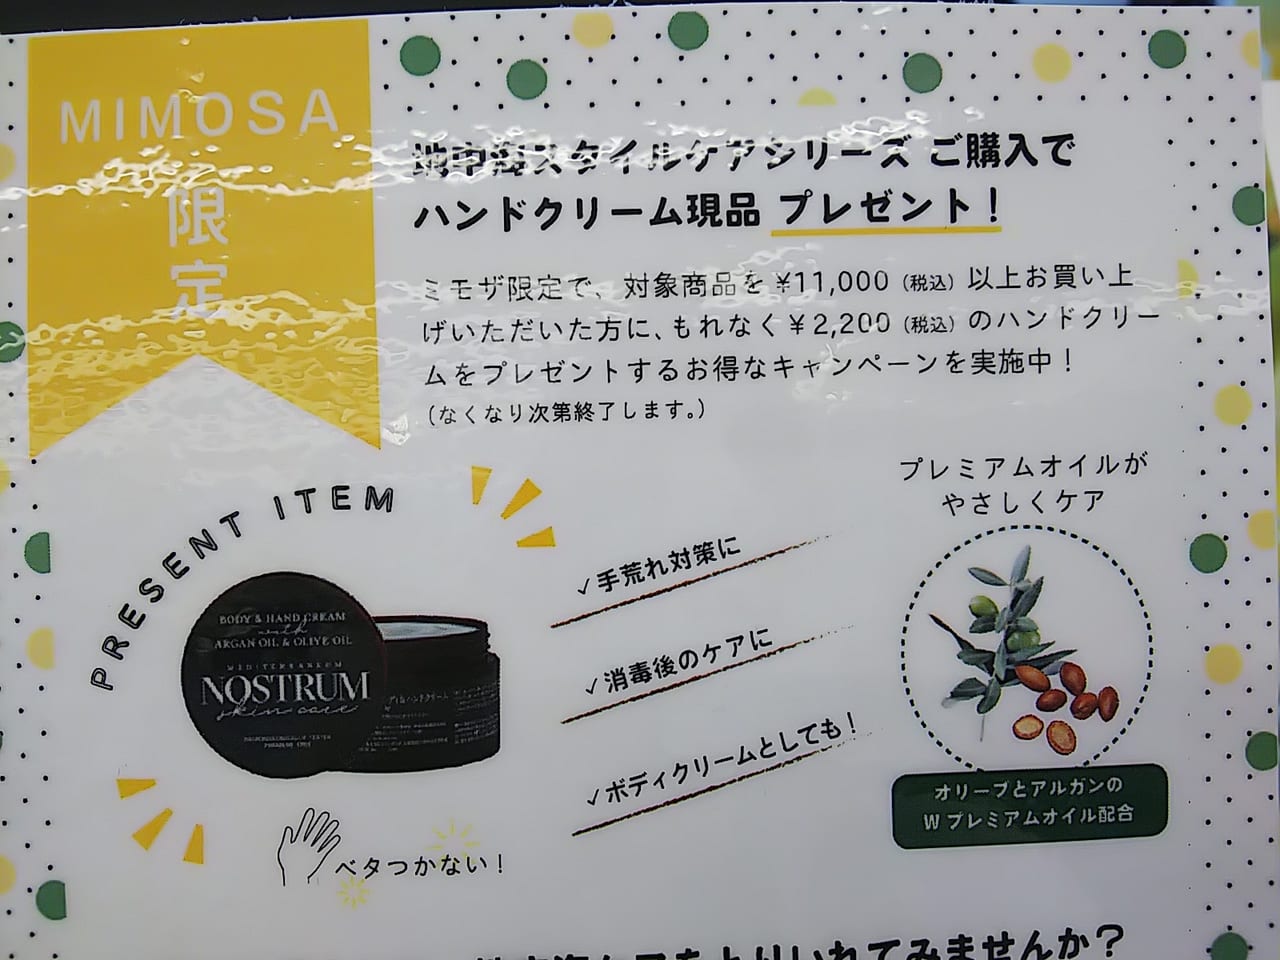 コスメと雑貨の専門店 ミモザ [Mimosa]「ノストラム」のキャンペーン